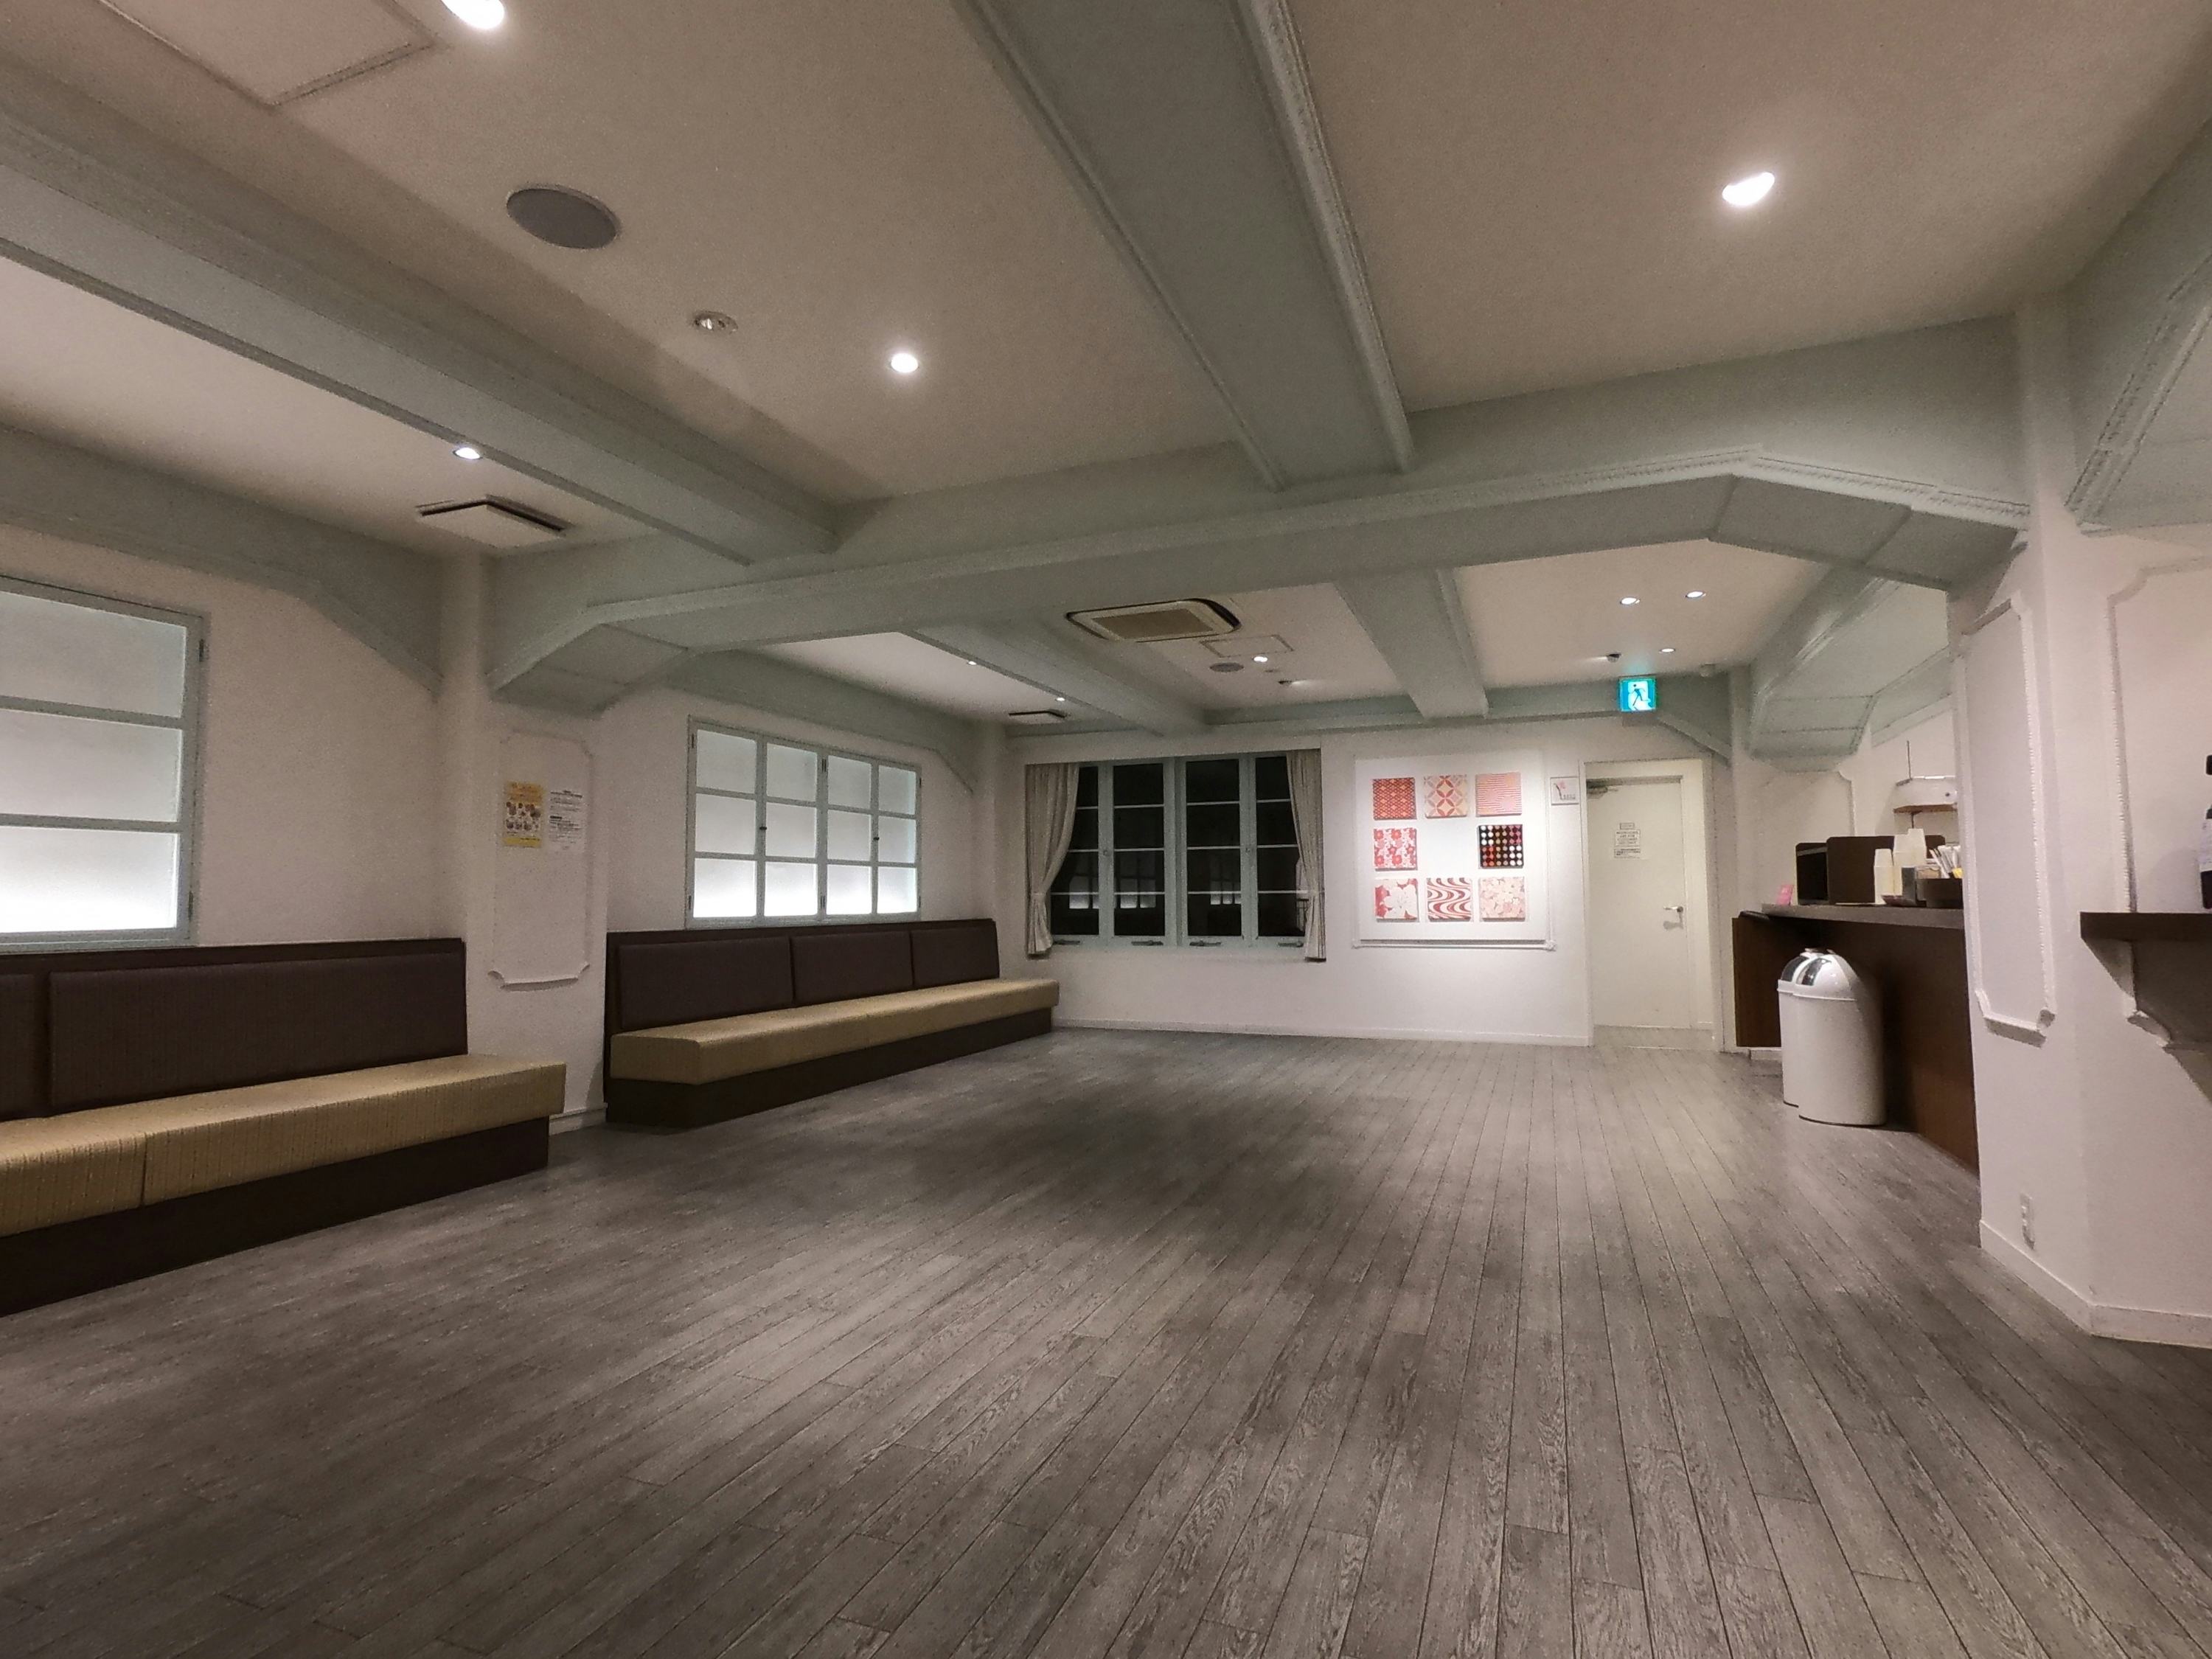 【祇園四条駅2分】展示会やポップアップカフェに最適な広々としたイベントスペース